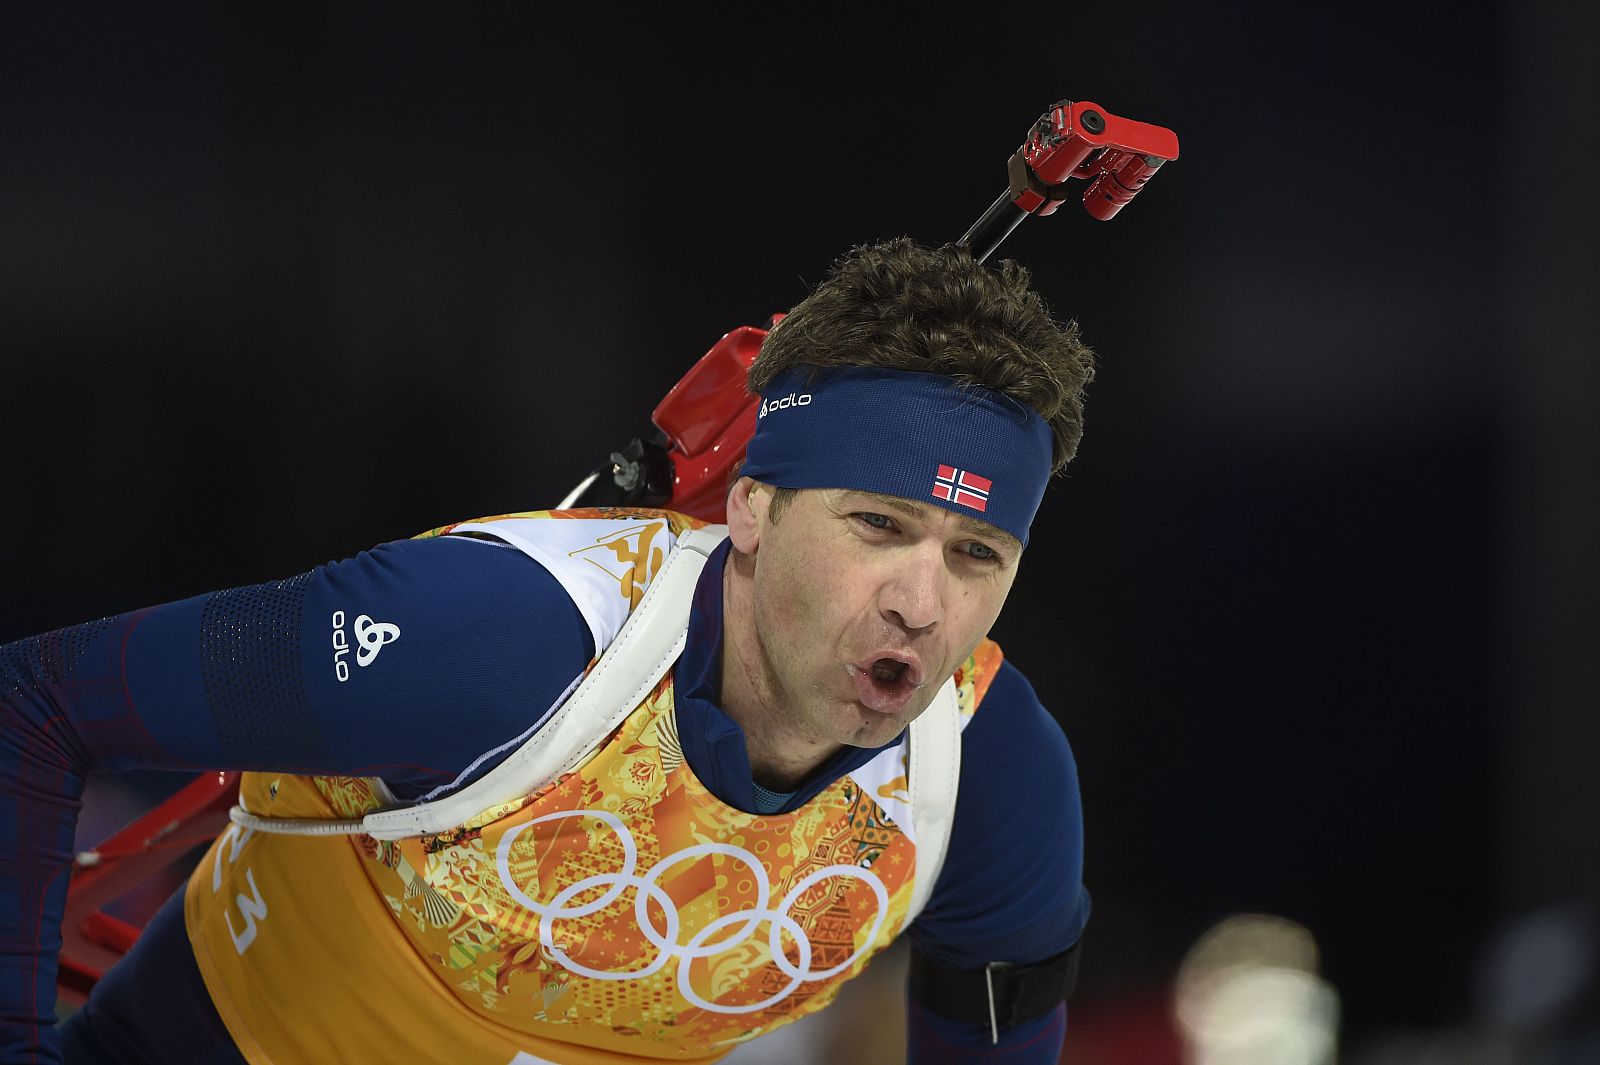 El nueruego Ole Einar Bjoerndalen se ha convertido en el atleta más laureado de unos Juegos de Invierno.